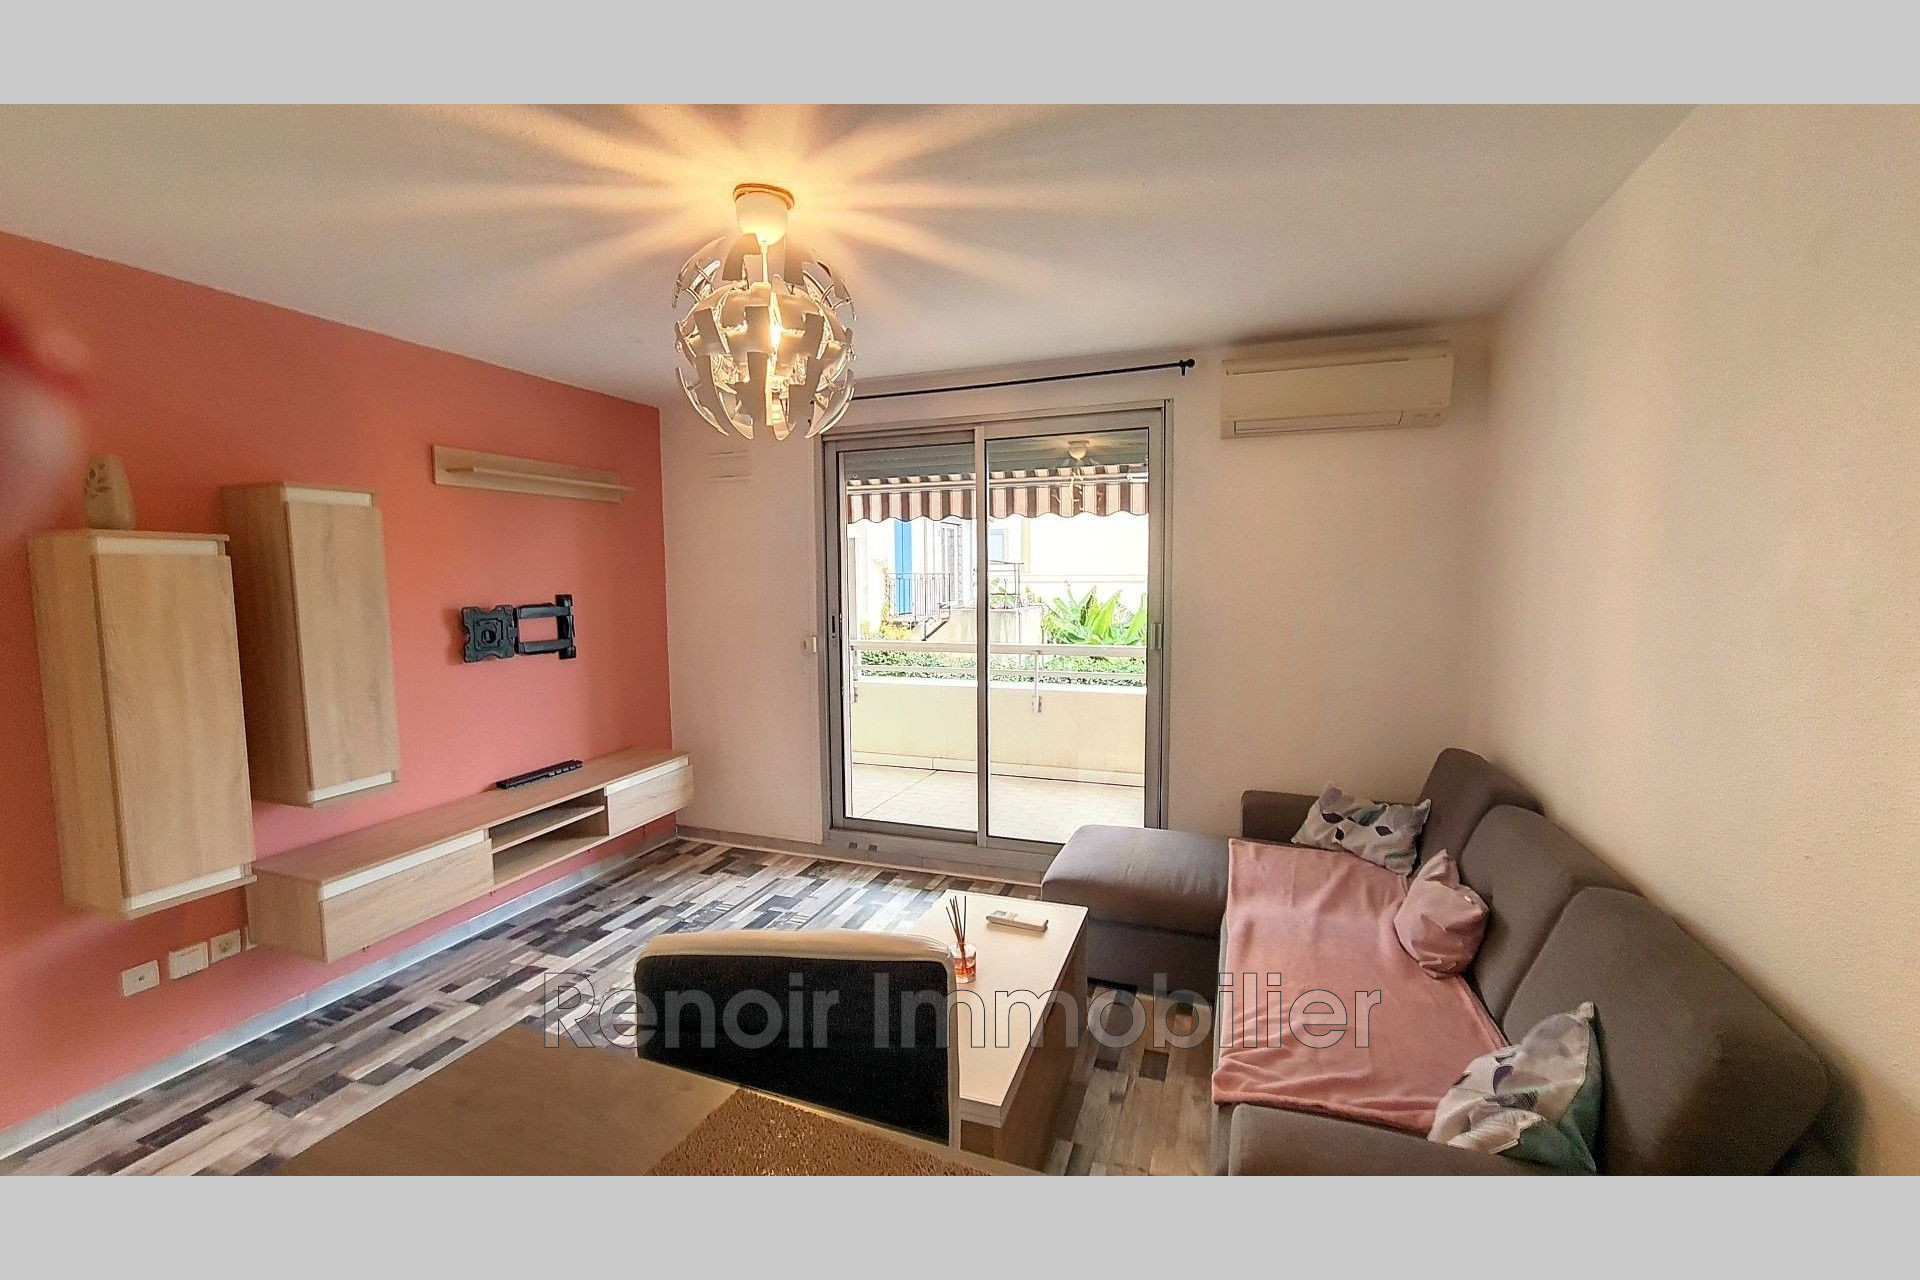 Vente Appartement 35m² 2 Pièces à Cagnes-sur-Mer (06800) - Renoir Immobilier